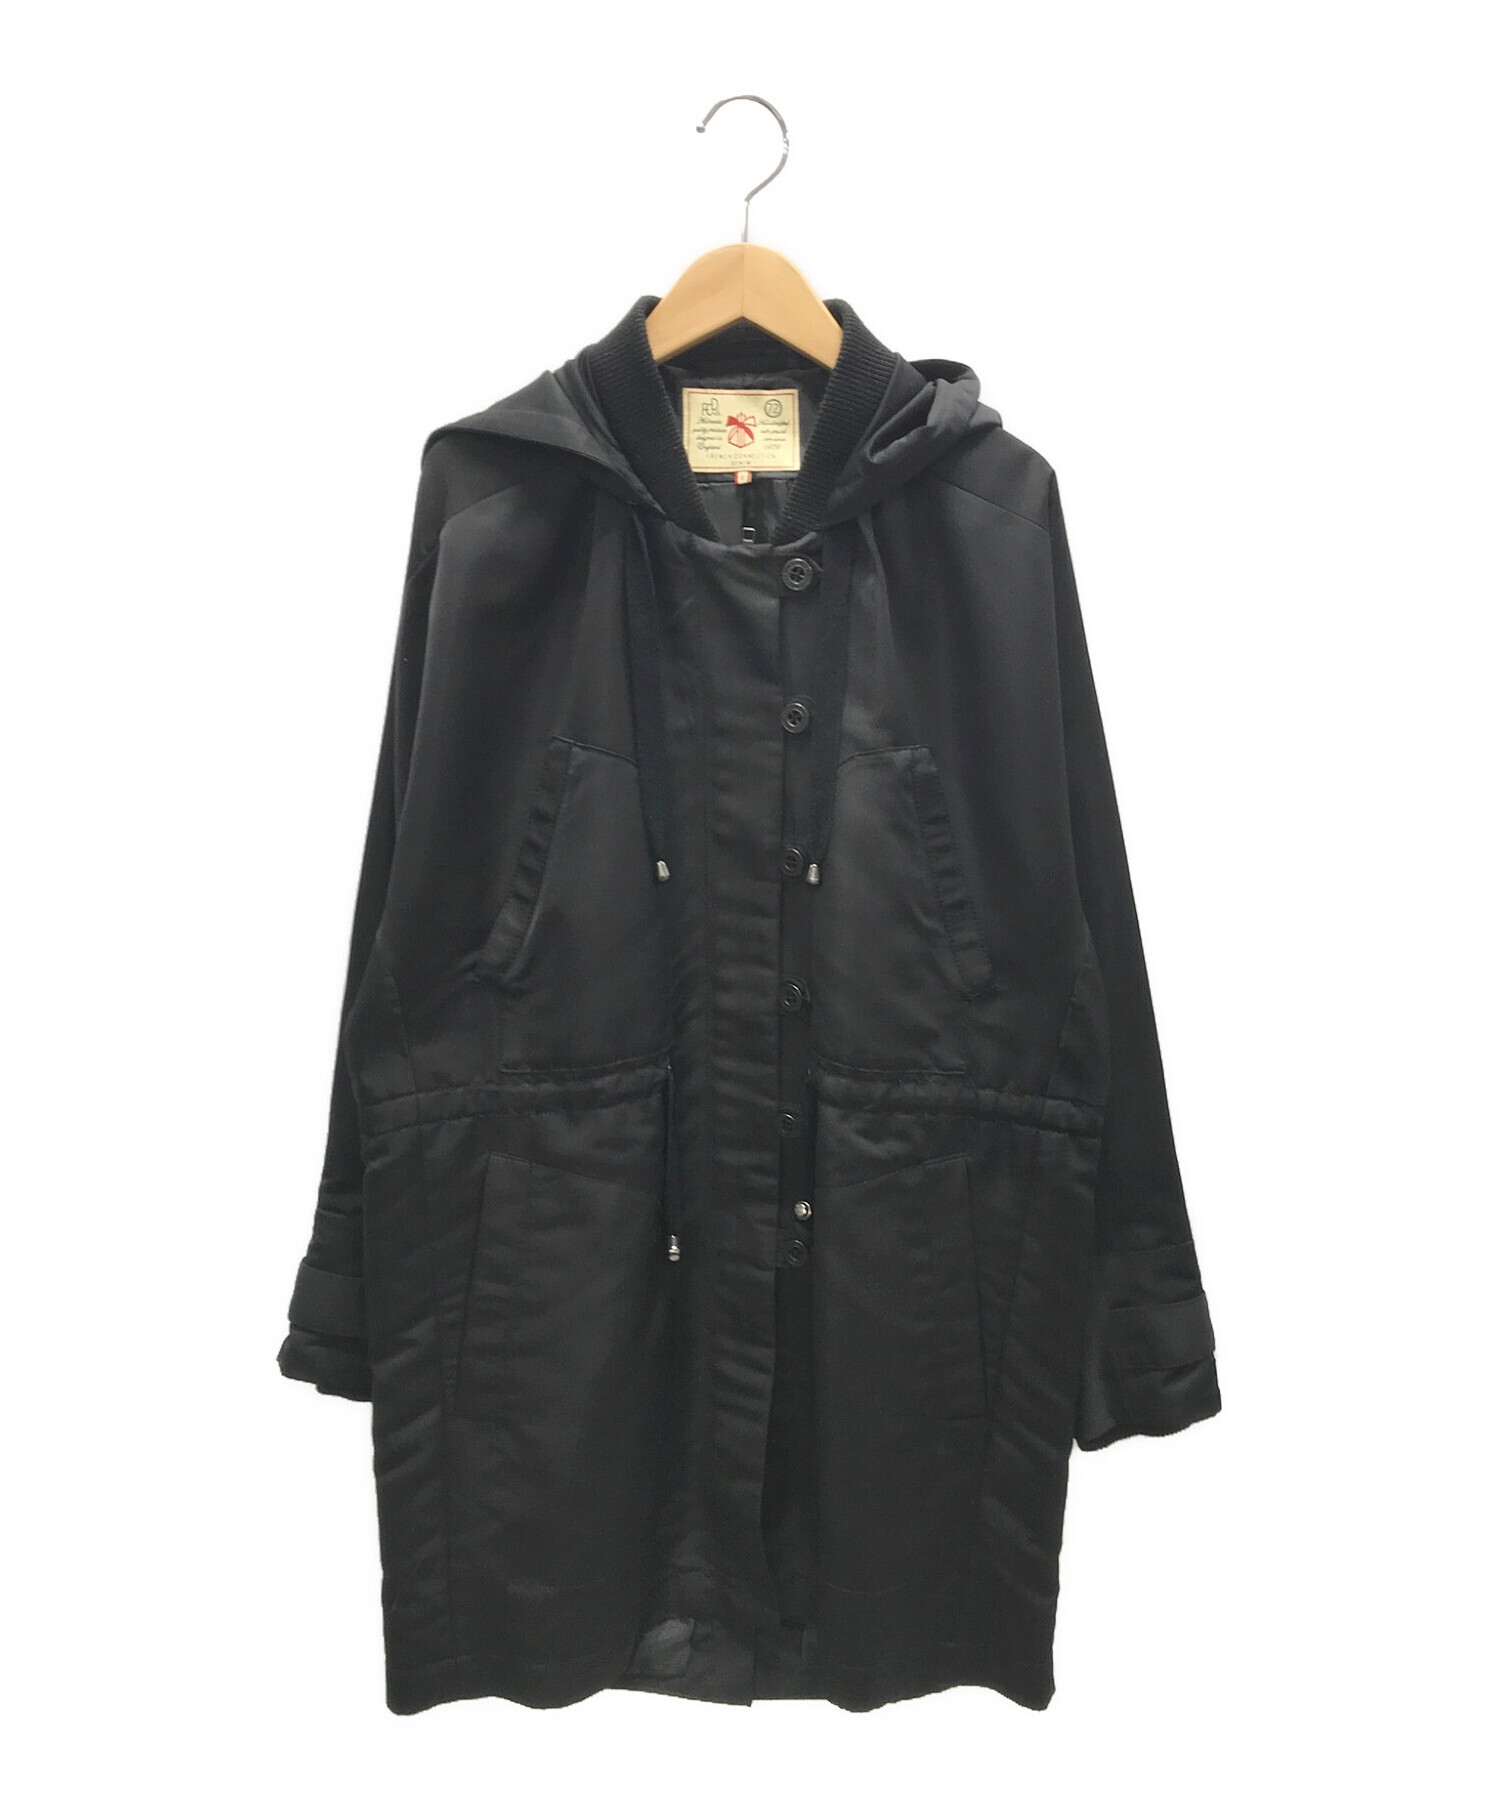 FRENCH CONNECTION (フレンチコネクション) フーデッドジャケット ブラック サイズ:6